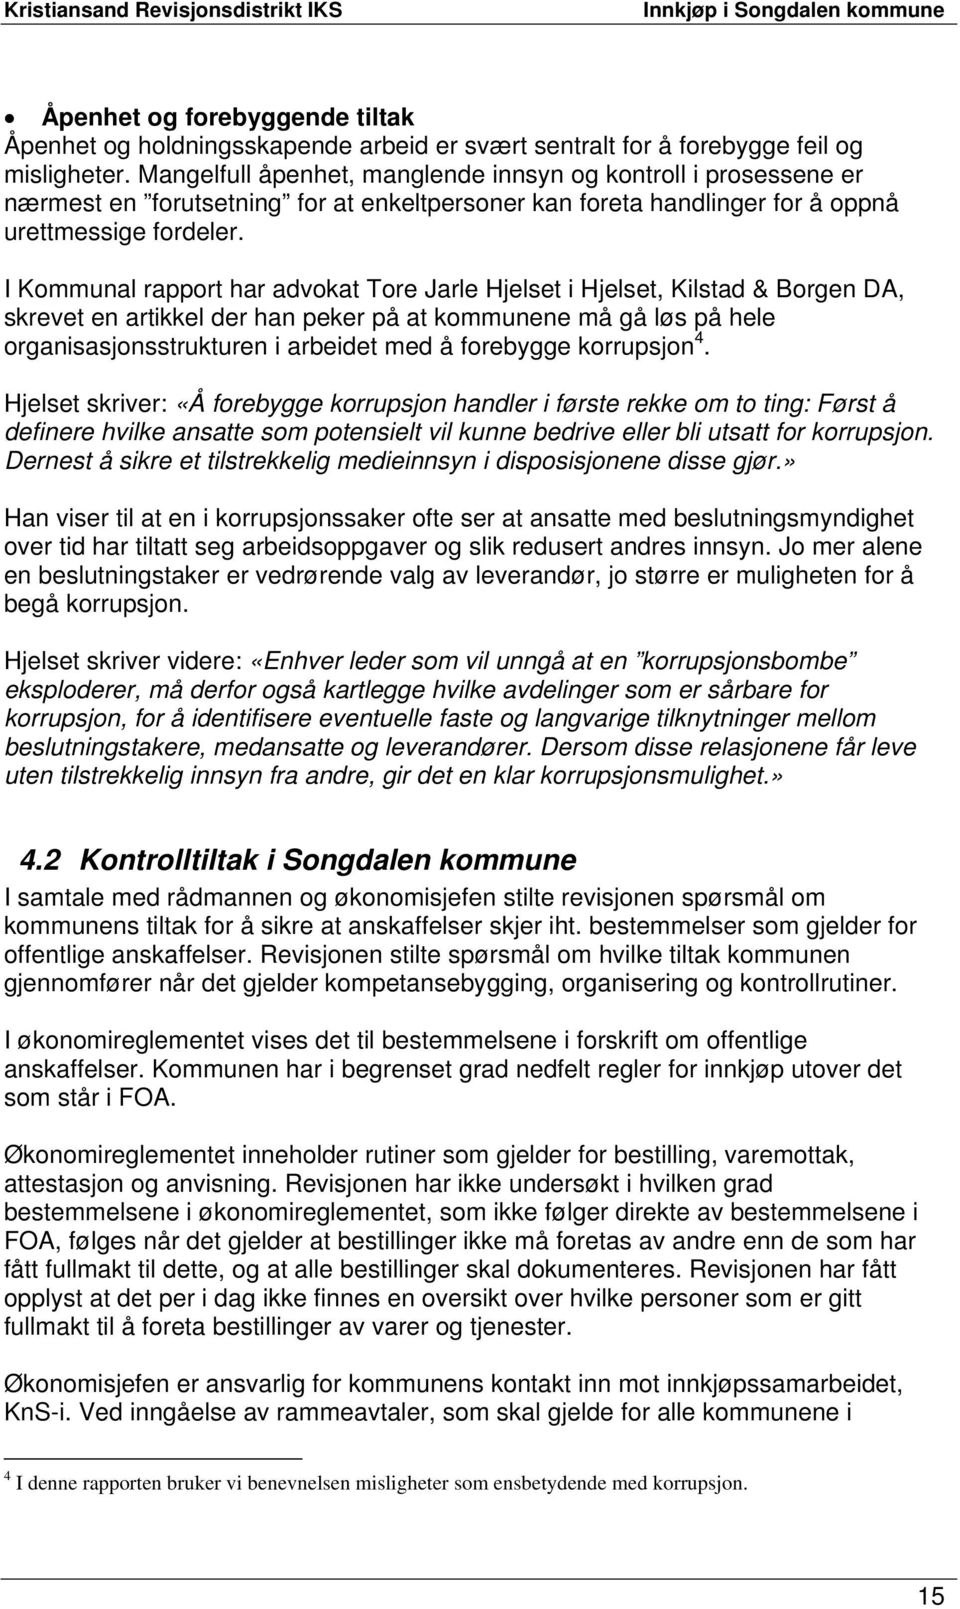 I Kommunal rapport har advokat Tore Jarle Hjelset i Hjelset, Kilstad & Borgen DA, skrevet en artikkel der han peker på at kommunene må gå løs på hele organisasjonsstrukturen i arbeidet med å